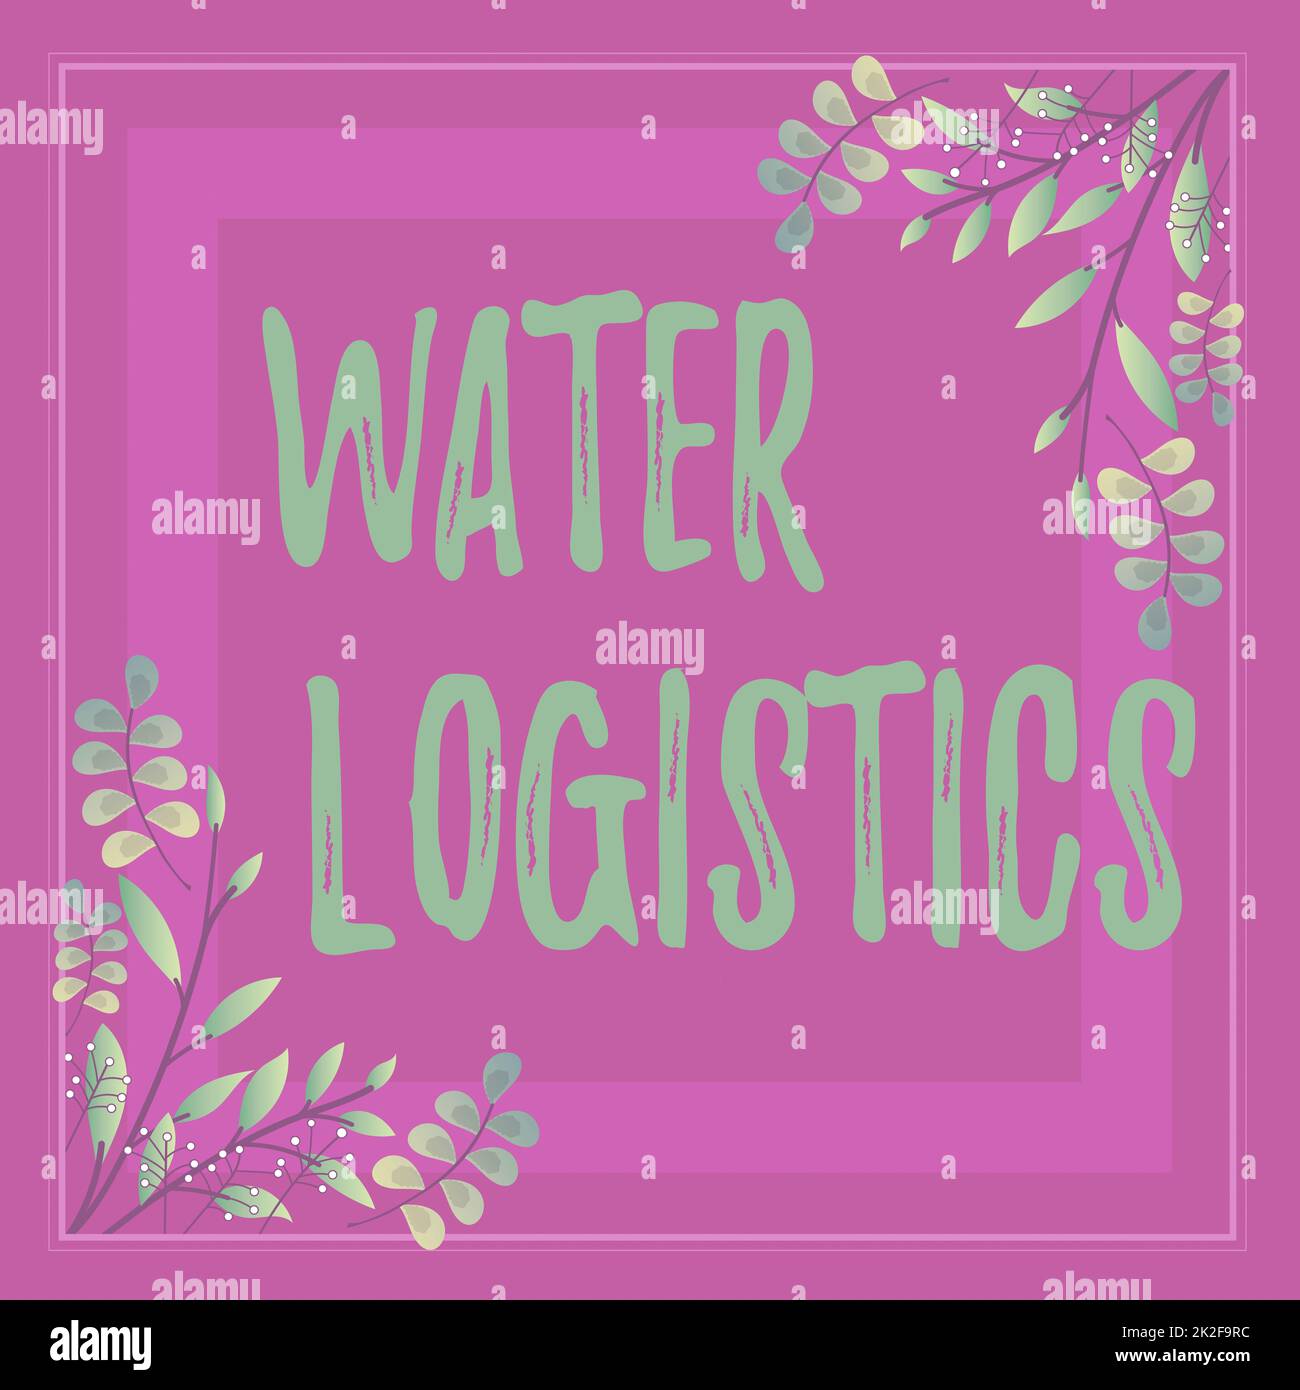 Konzeptionelle Bildunterschrift Wasserlogistik. Geschäftsidee Wasser Logistik Rahmen mit bunten Blumen und Blätter harmonisch angeordnet dekoriert. Stockfoto